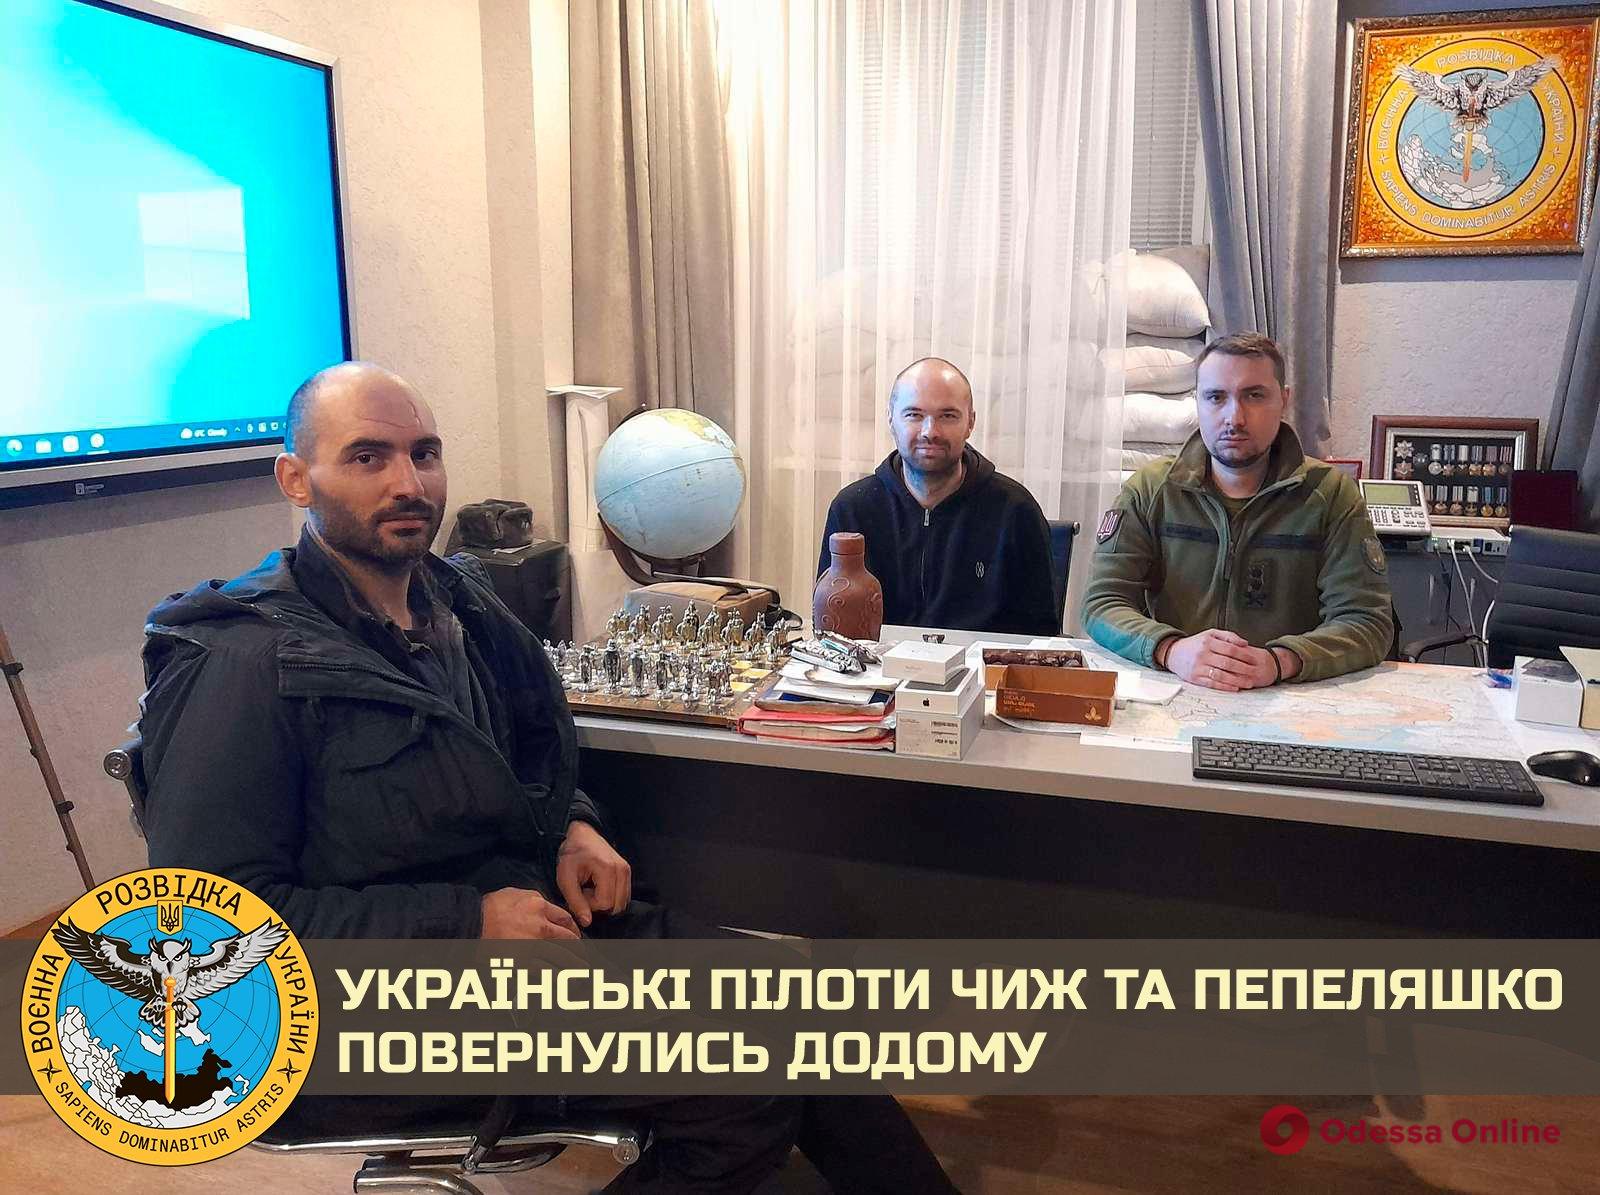 Двух украинских пилотов освободили из плена, — разведка